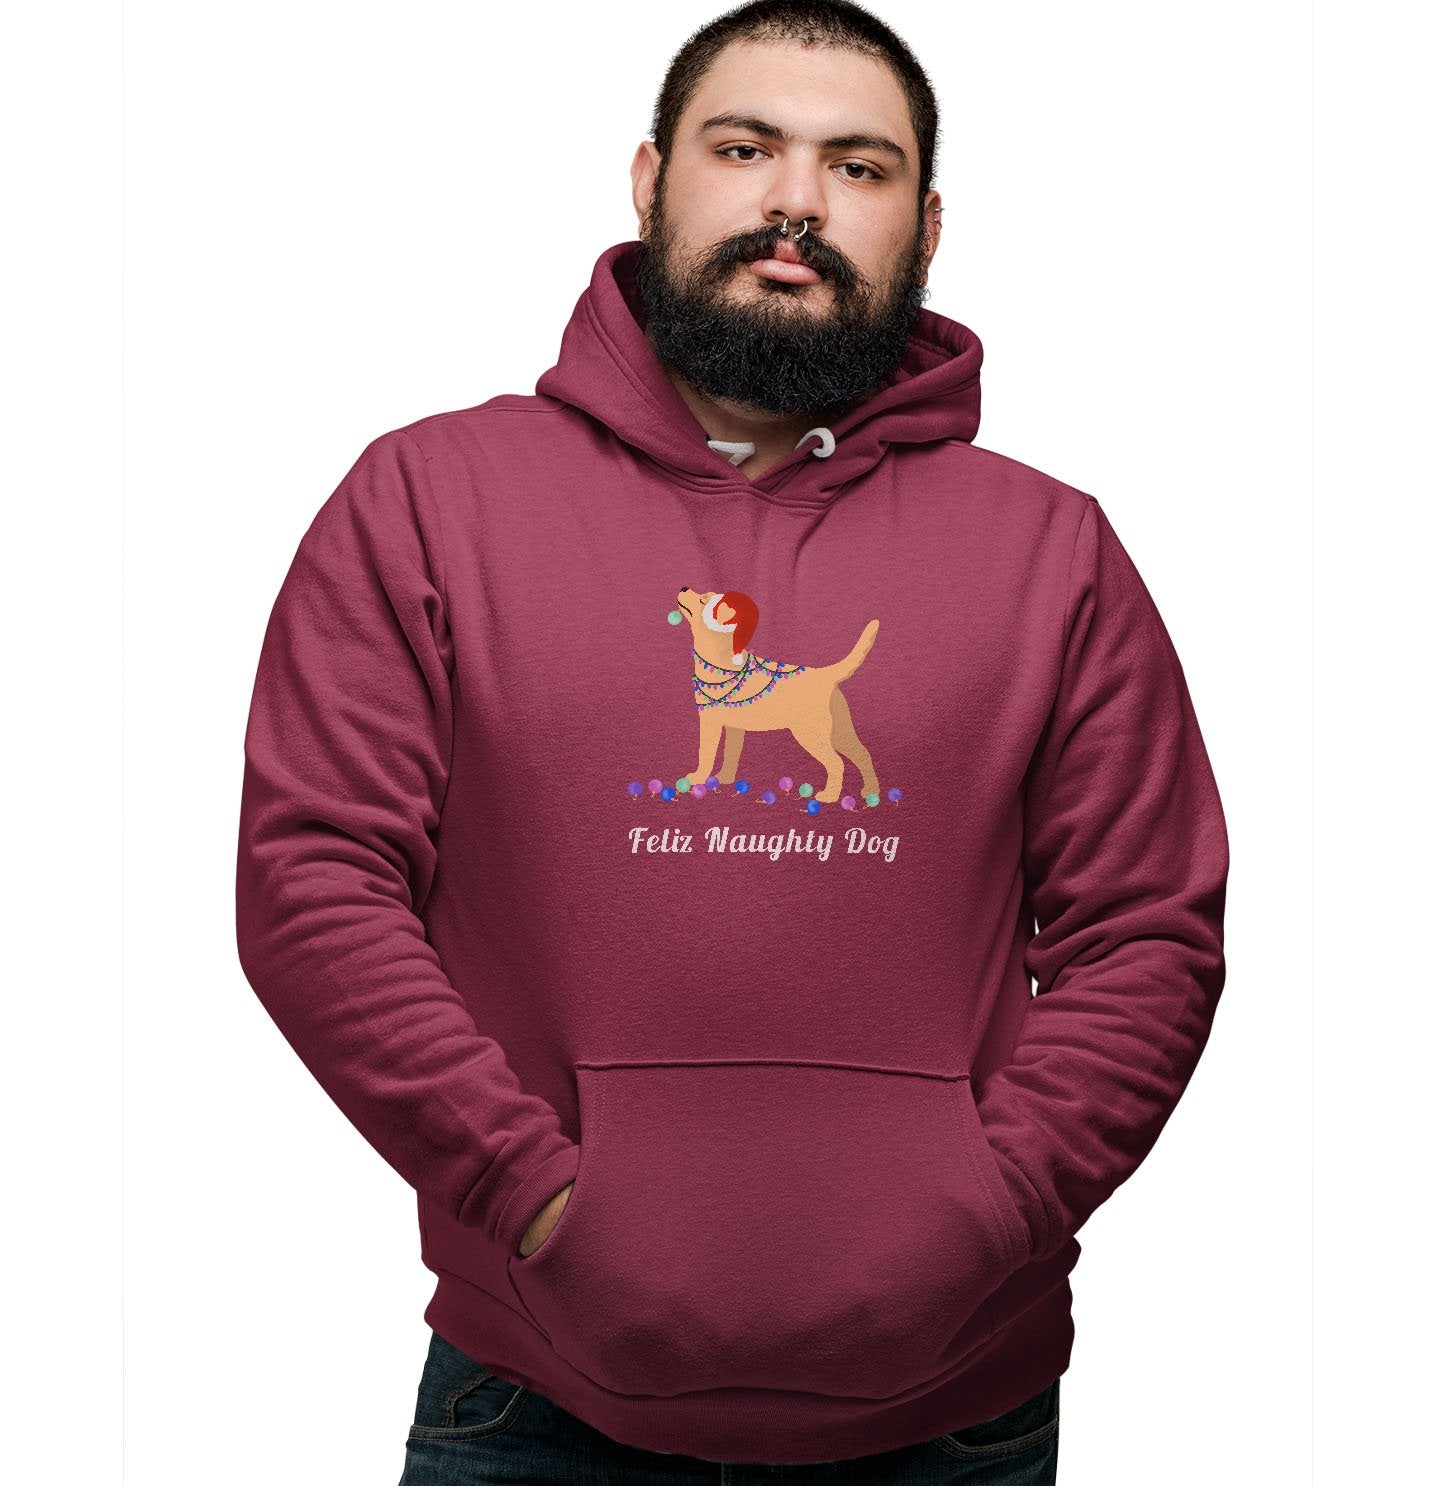 Feliz Naughty Dog Yellow Lab - Adult Unisex Hoodie Sweatshirt